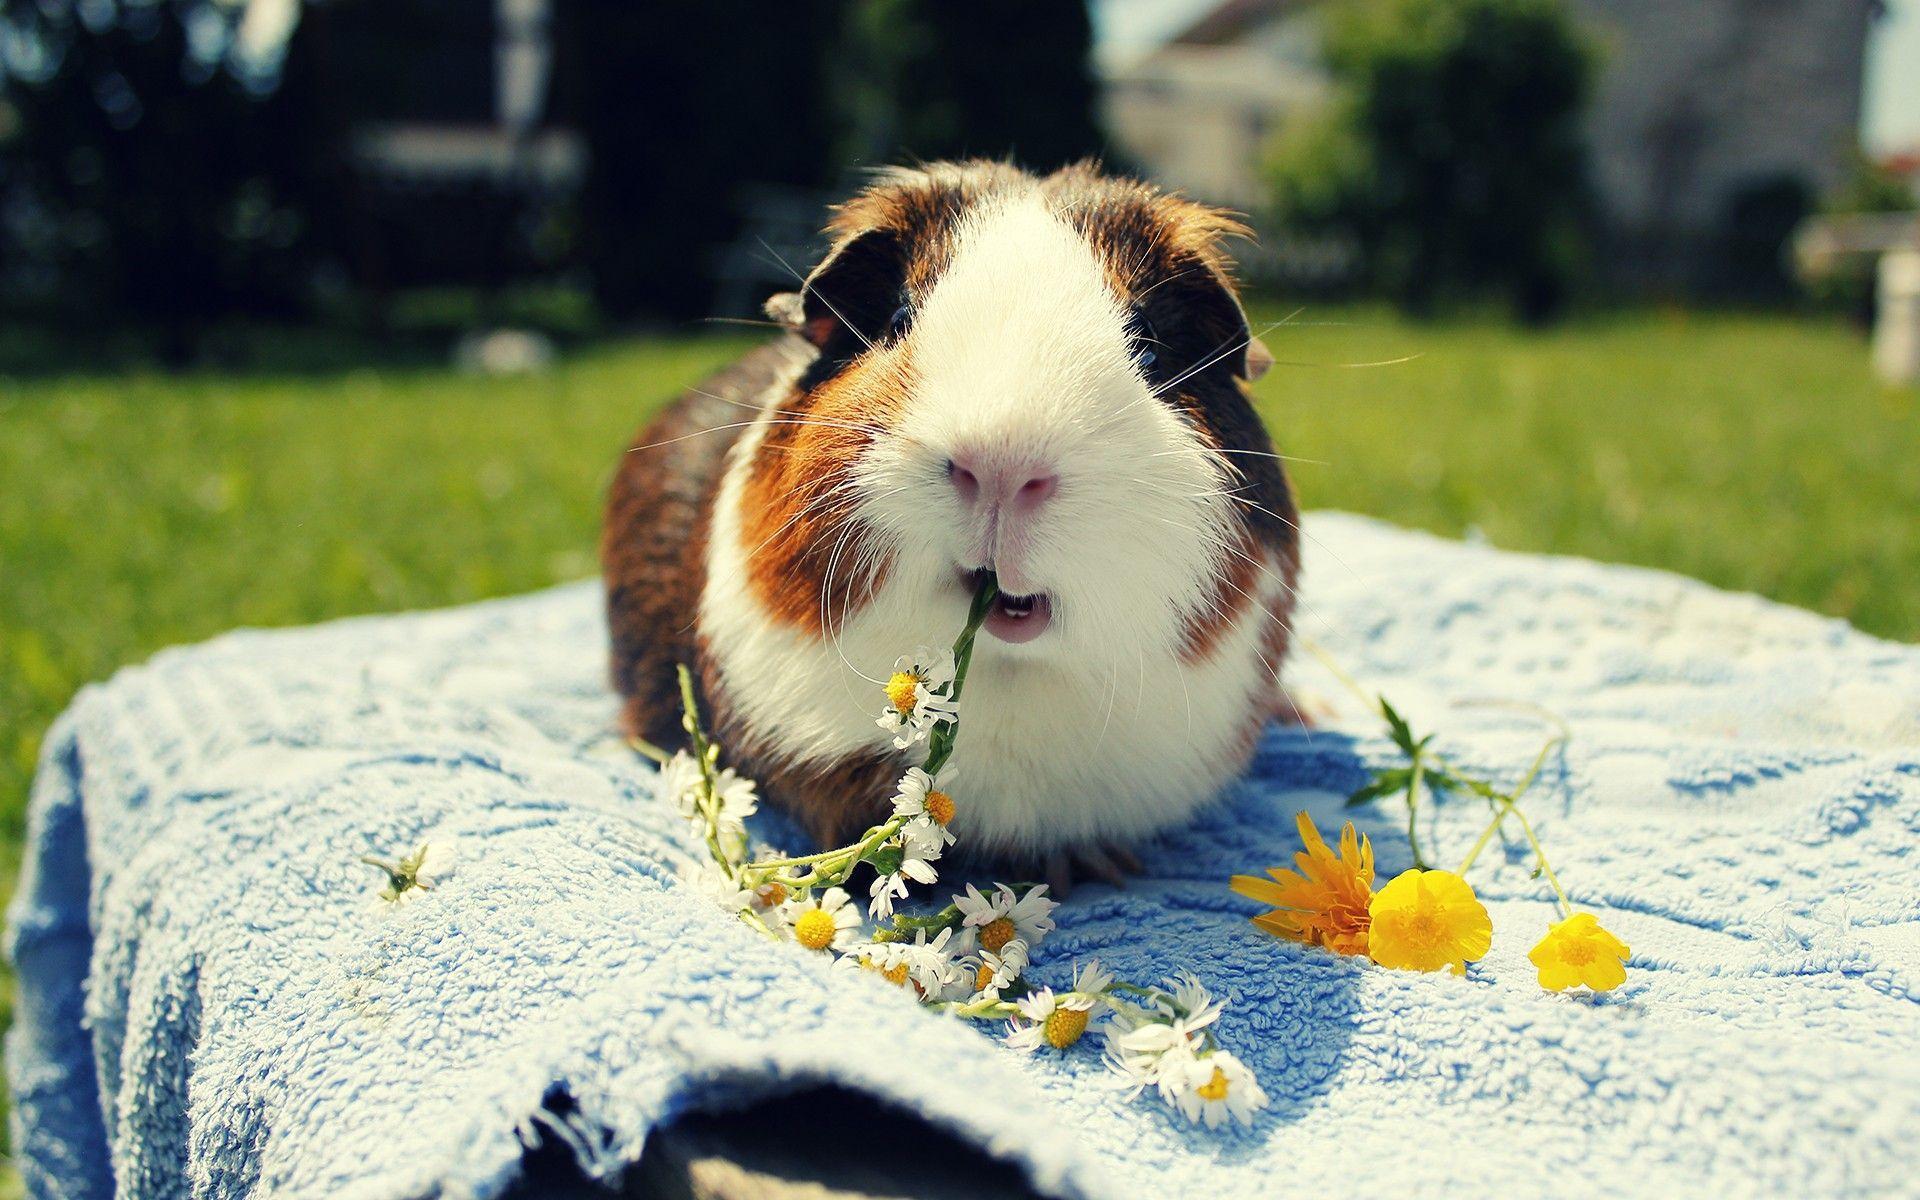 Cute eating guinea pig Wallpaper